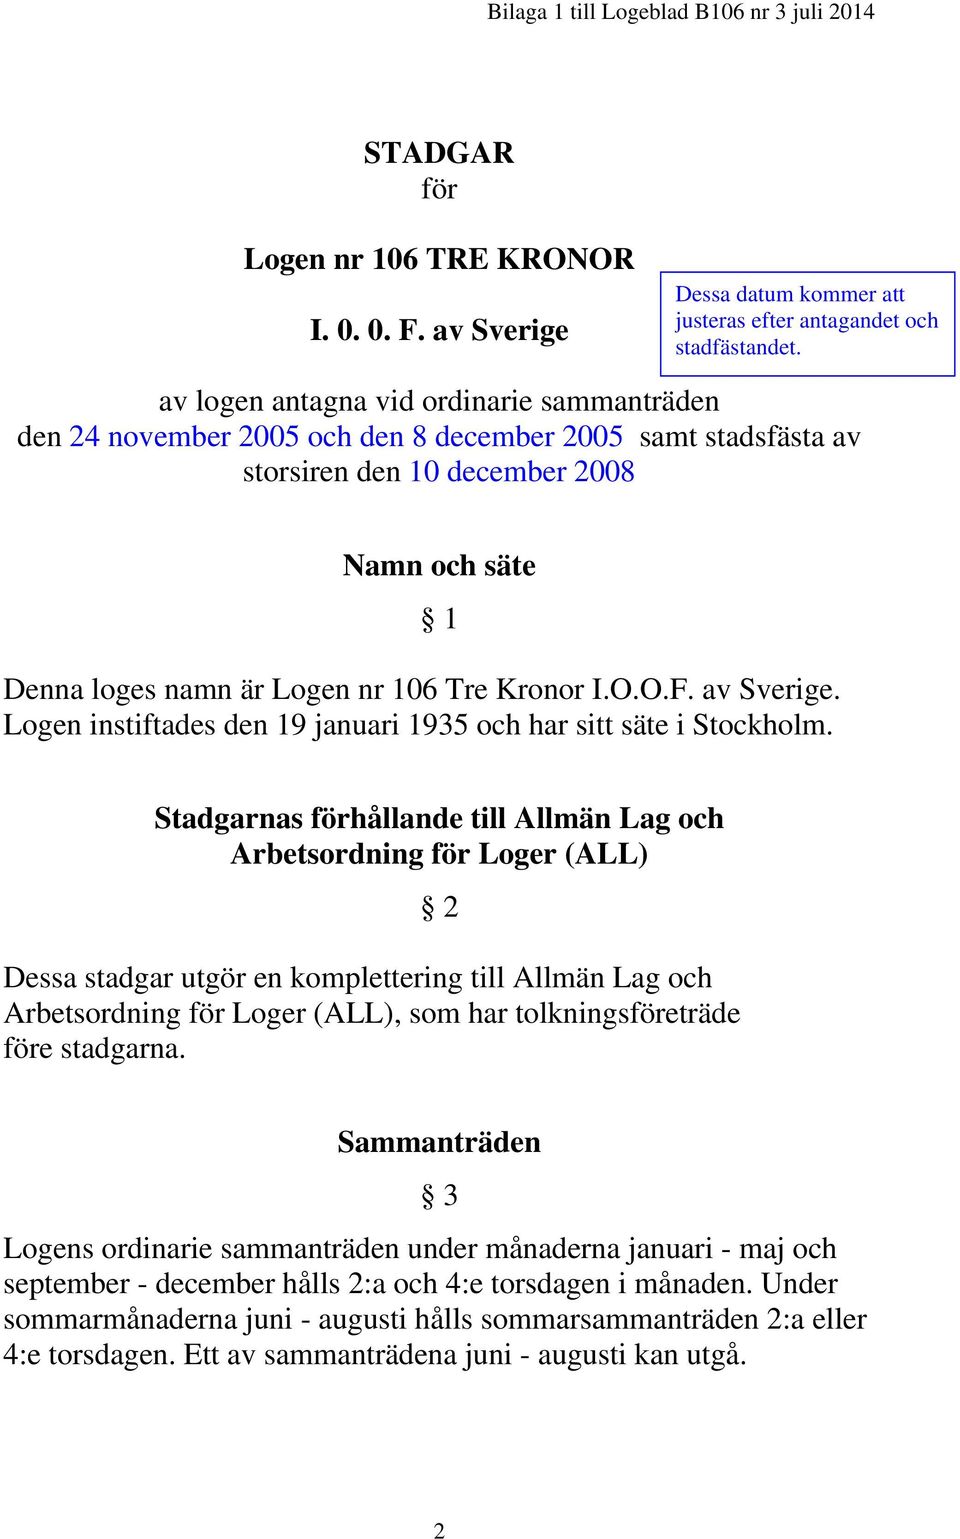 I.O.O.F. av Sverige. Logen instiftades den 19 januari 1935 och har sitt säte i Stockholm.